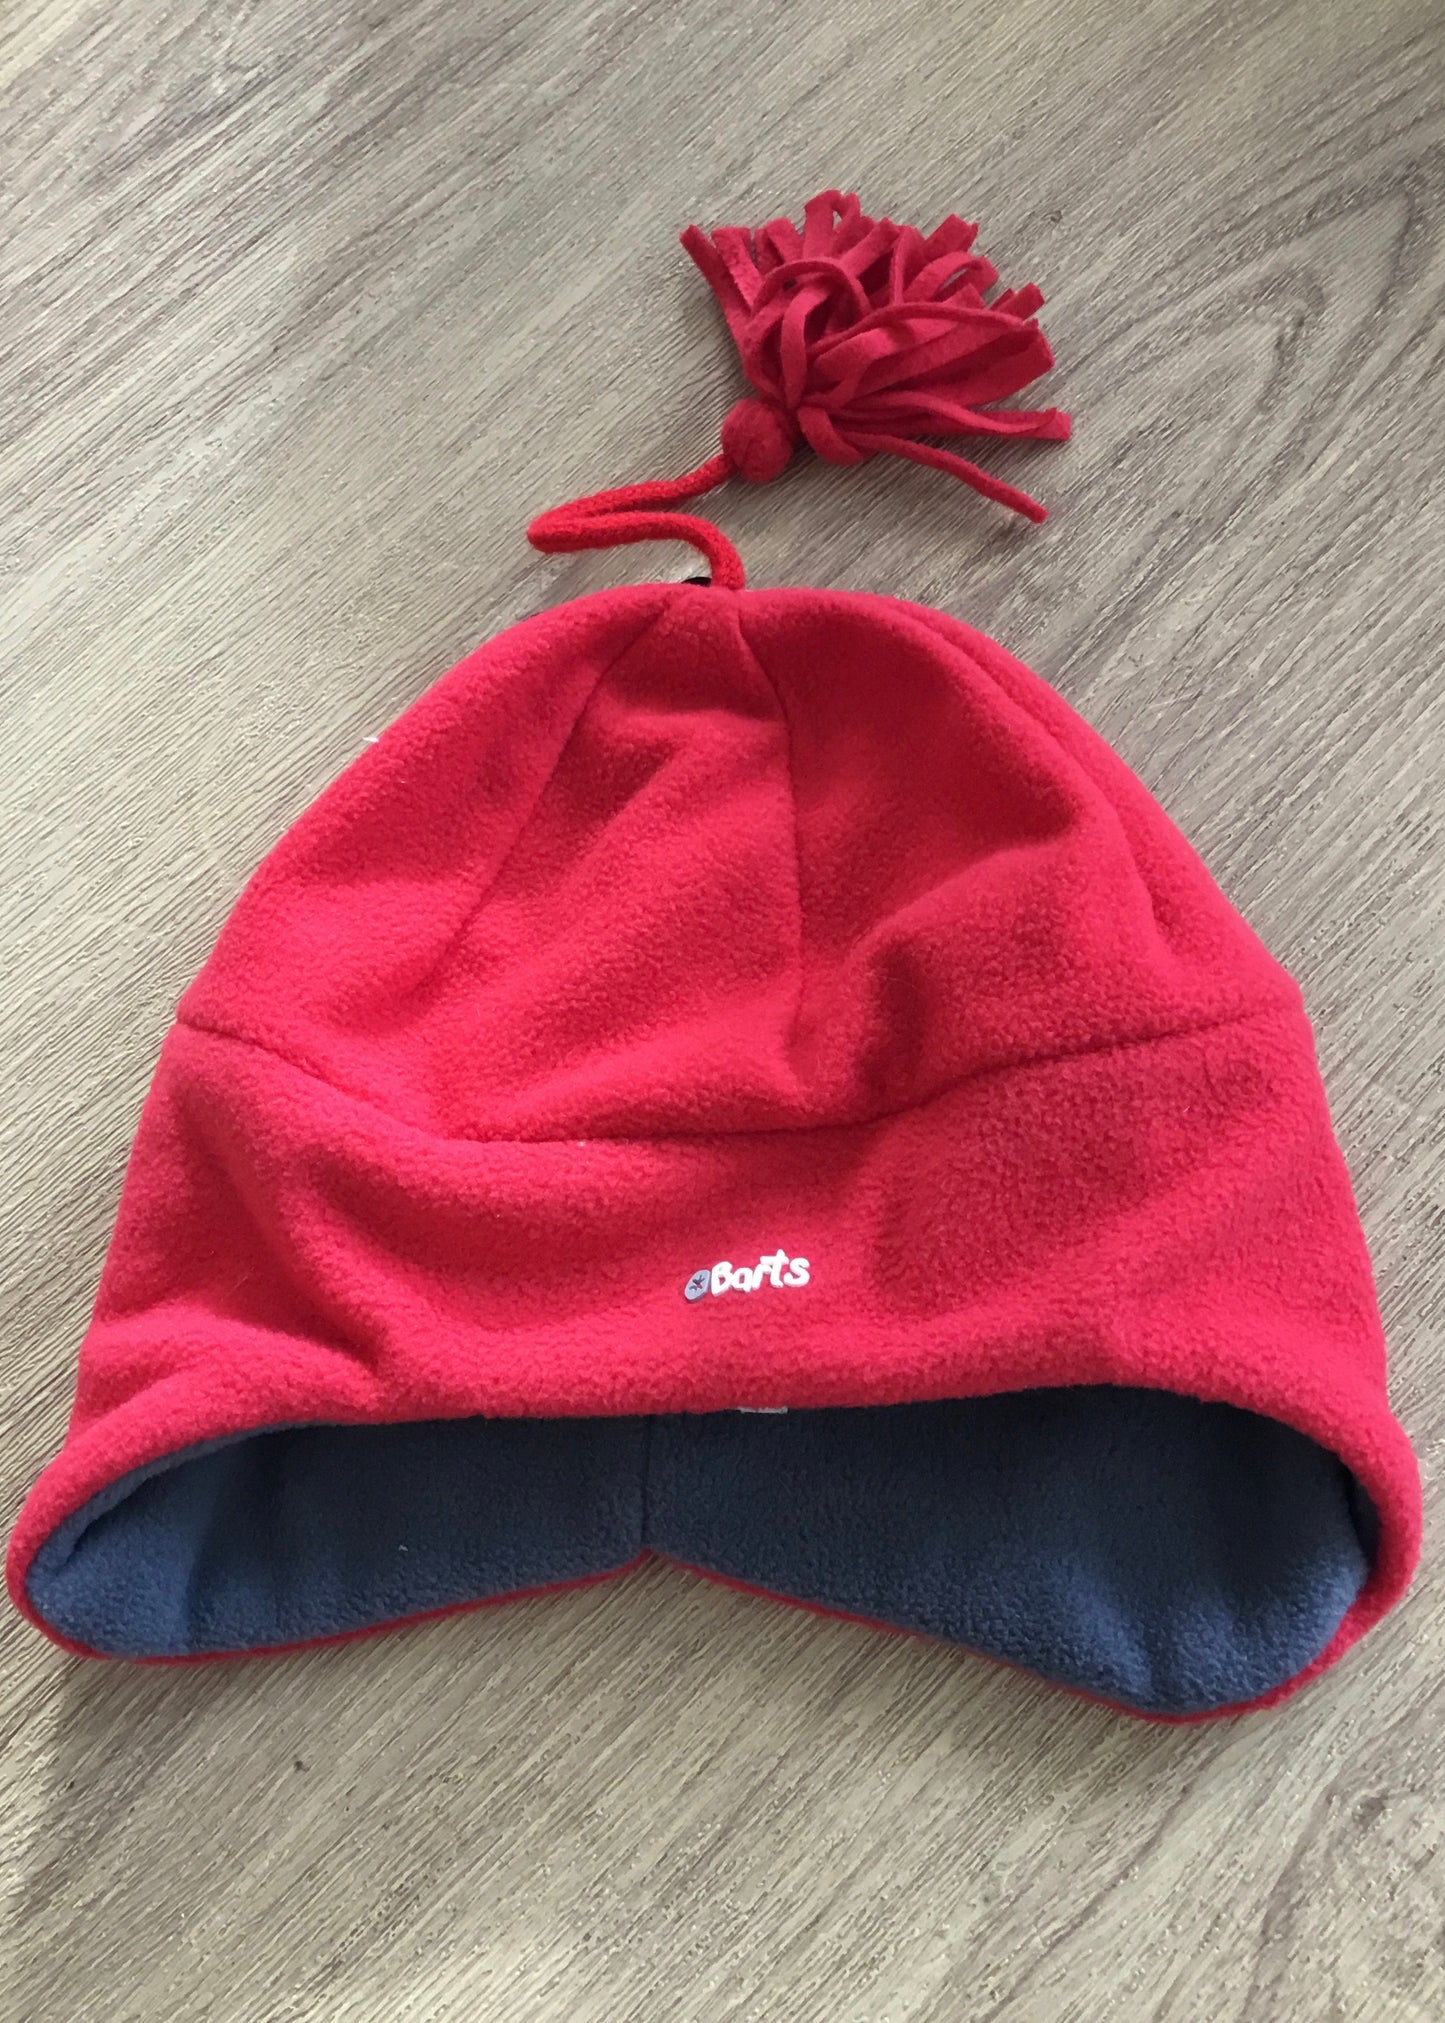 Barts Babies -Red Fleece Hat